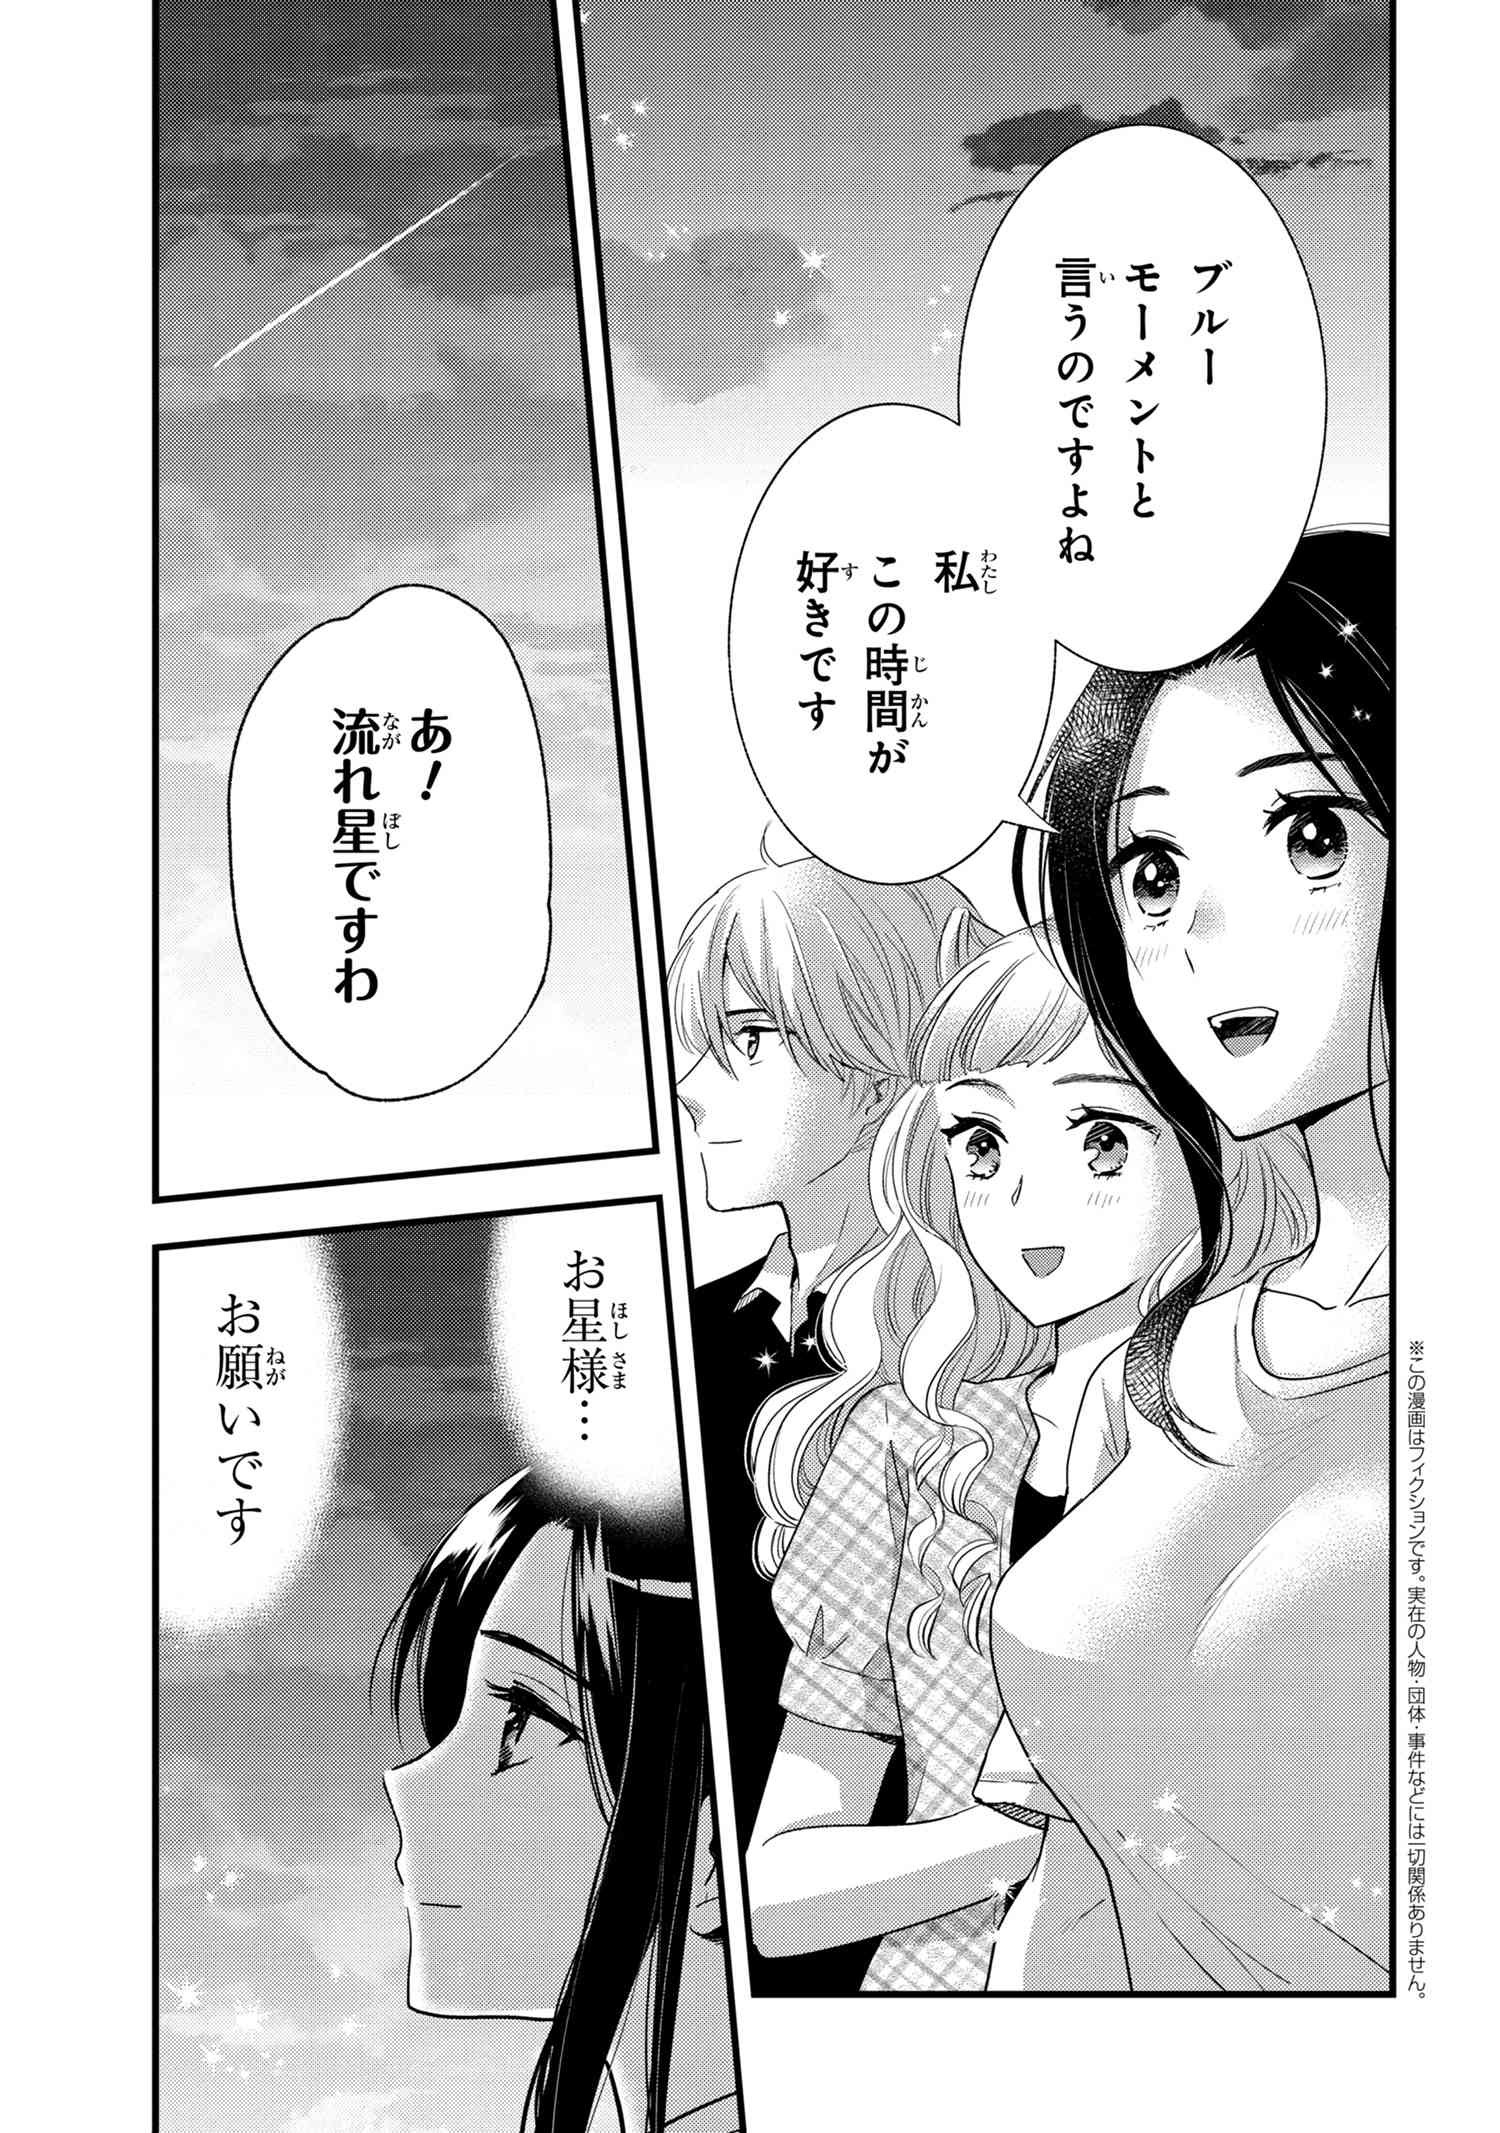 Reiko no Fuugi Akuyaku Reijou to Yobarete imasu ga, tada no Binbou Musume desu - Chapter 12.7 - Page 2